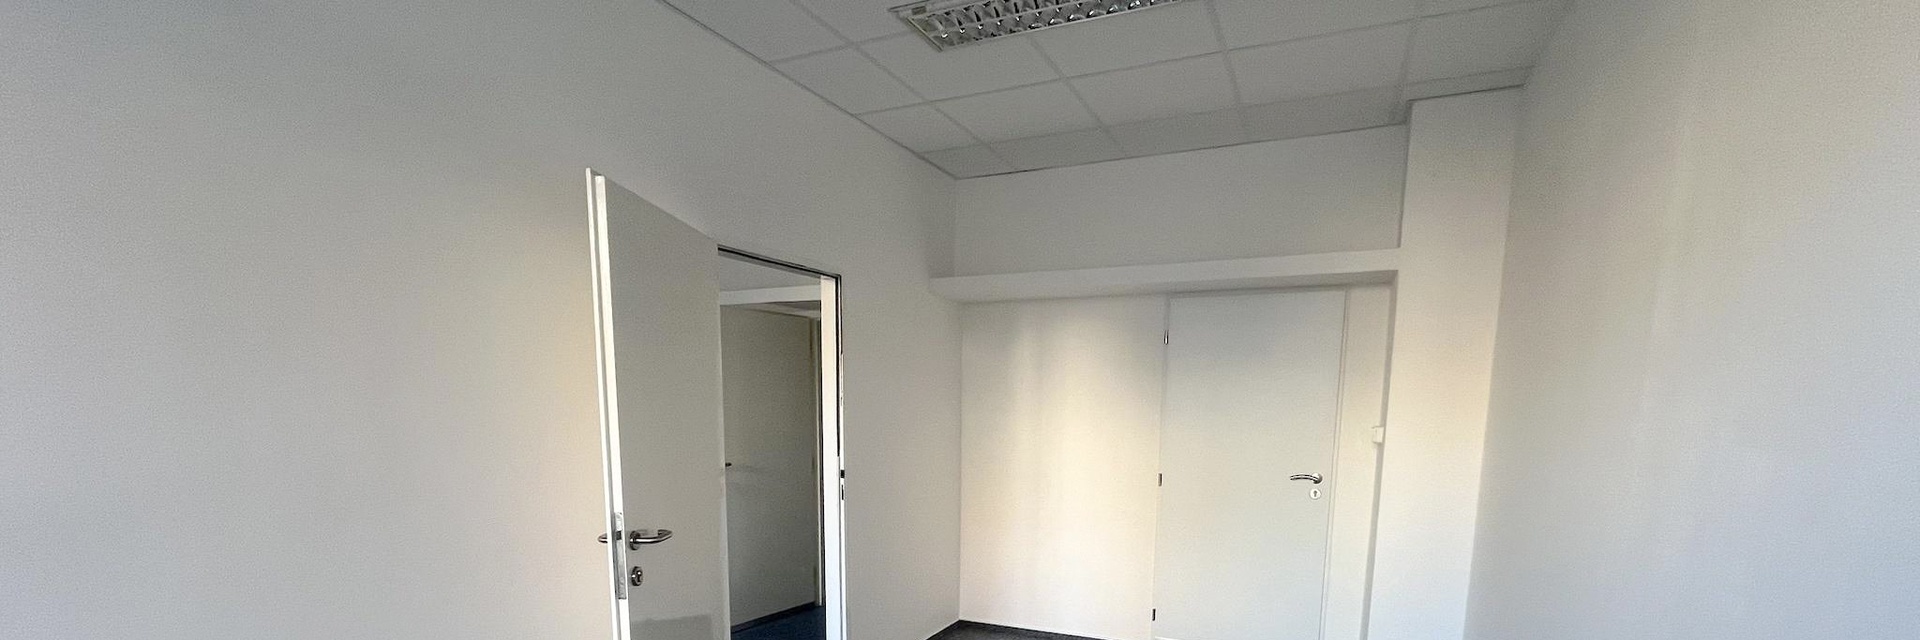 Pronájem klimatizovaného kancelářského celku 36 m², v centru Brna, ul. Milady Horákové